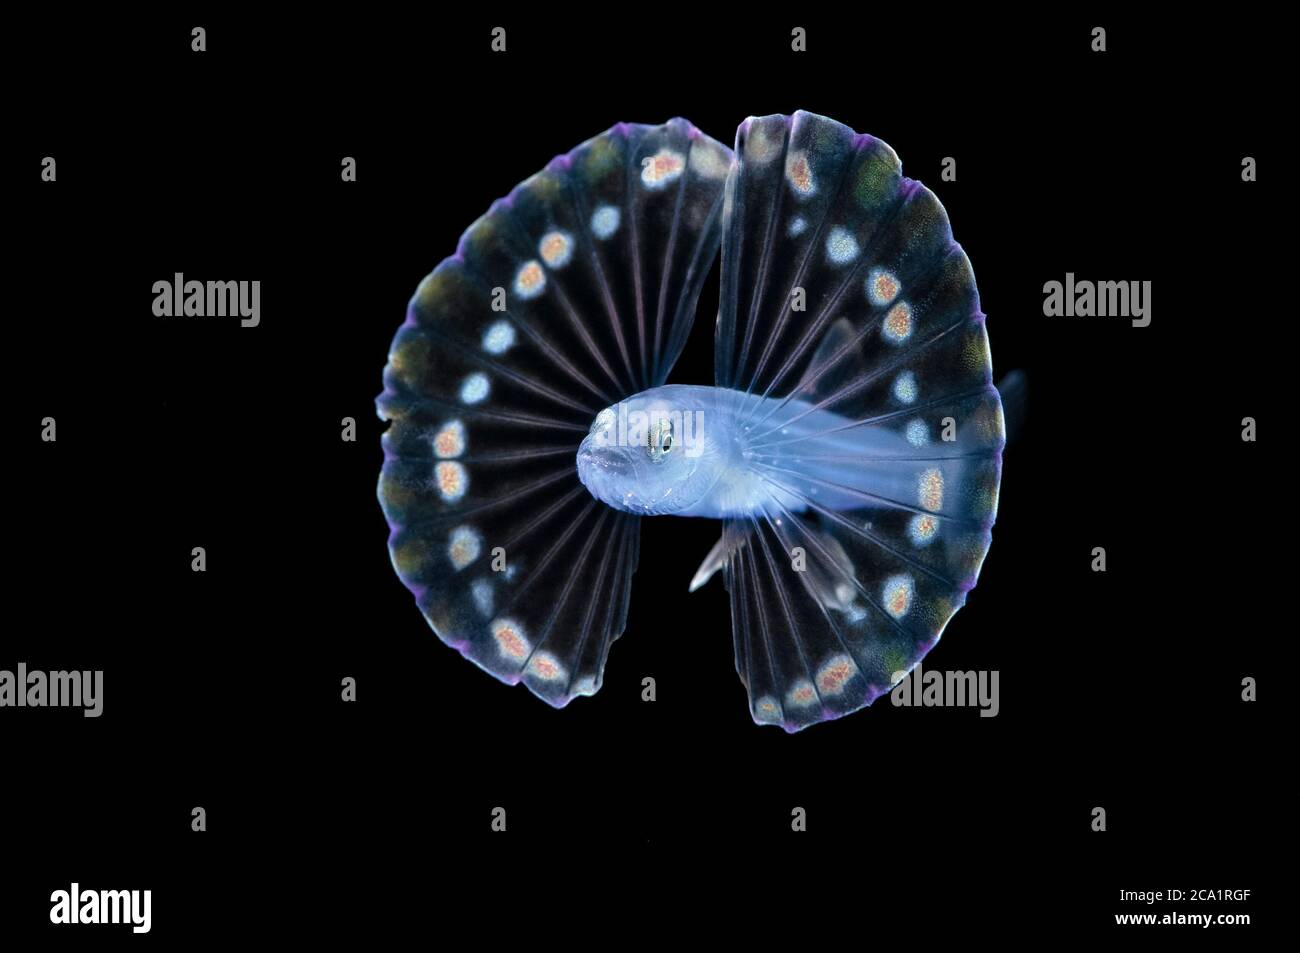 Larva de peces trípode de mar profundo no identificados, Familia Ipnopidae, fotografiada durante la inmersión en aguas negras en el océano abierto a 20 pies con fondo a 600 más f Foto de stock